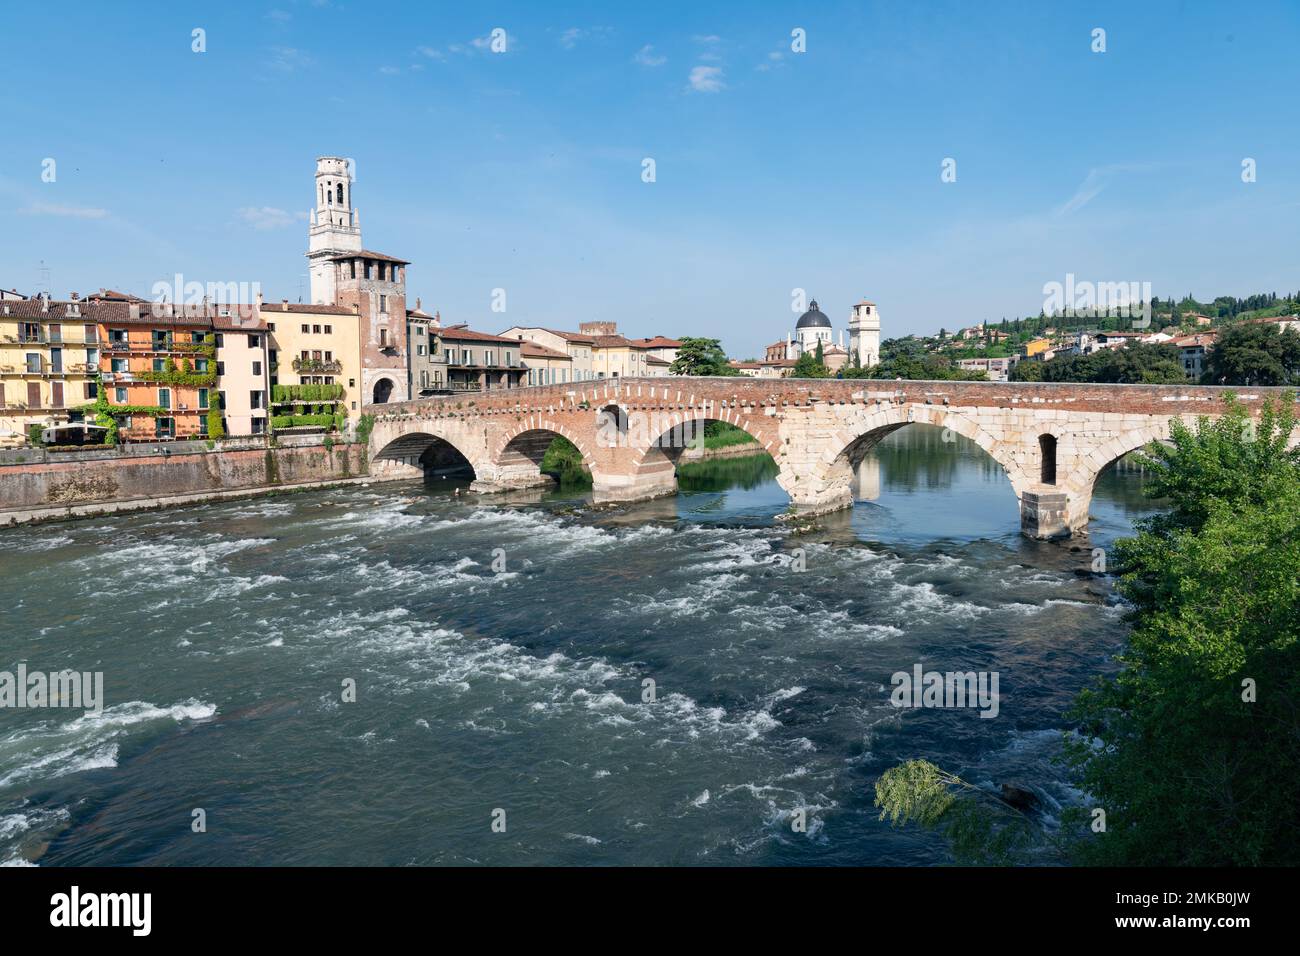 Agua de movimiento rápido que fluye bajo los arcos del puente Ponte Pietra, que se extiende por el Fiume Adige en Verona, Italia, frente a cielos azules claros Foto de stock